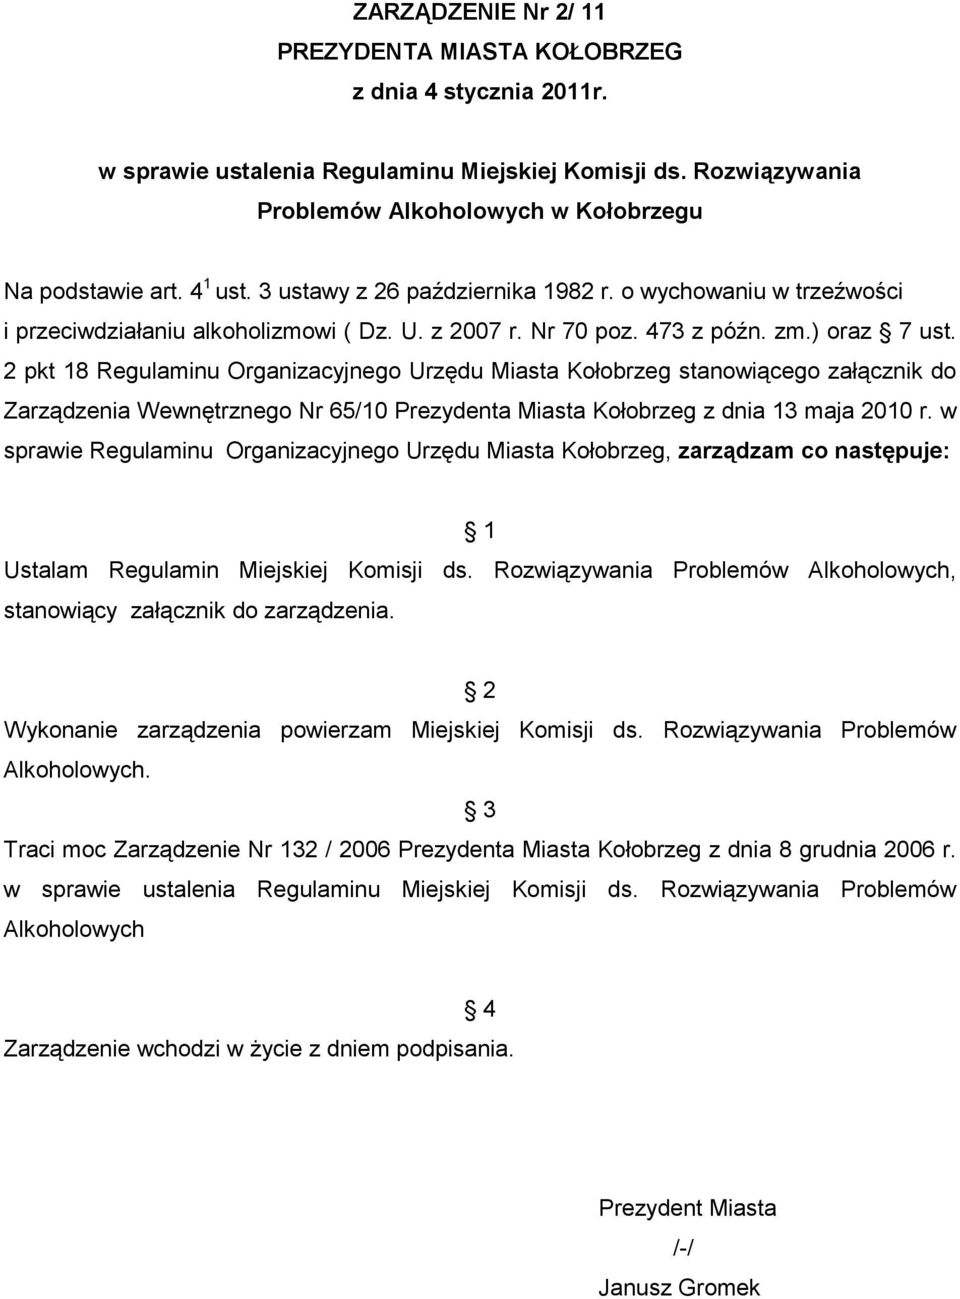 2 pkt 18 Regulaminu Organizacyjnego Urzędu Miasta Kołobrzeg stanowiącego załącznik do Zarządzenia Wewnętrznego Nr 65/10 Prezydenta Miasta Kołobrzeg z dnia 13 maja 2010 r.